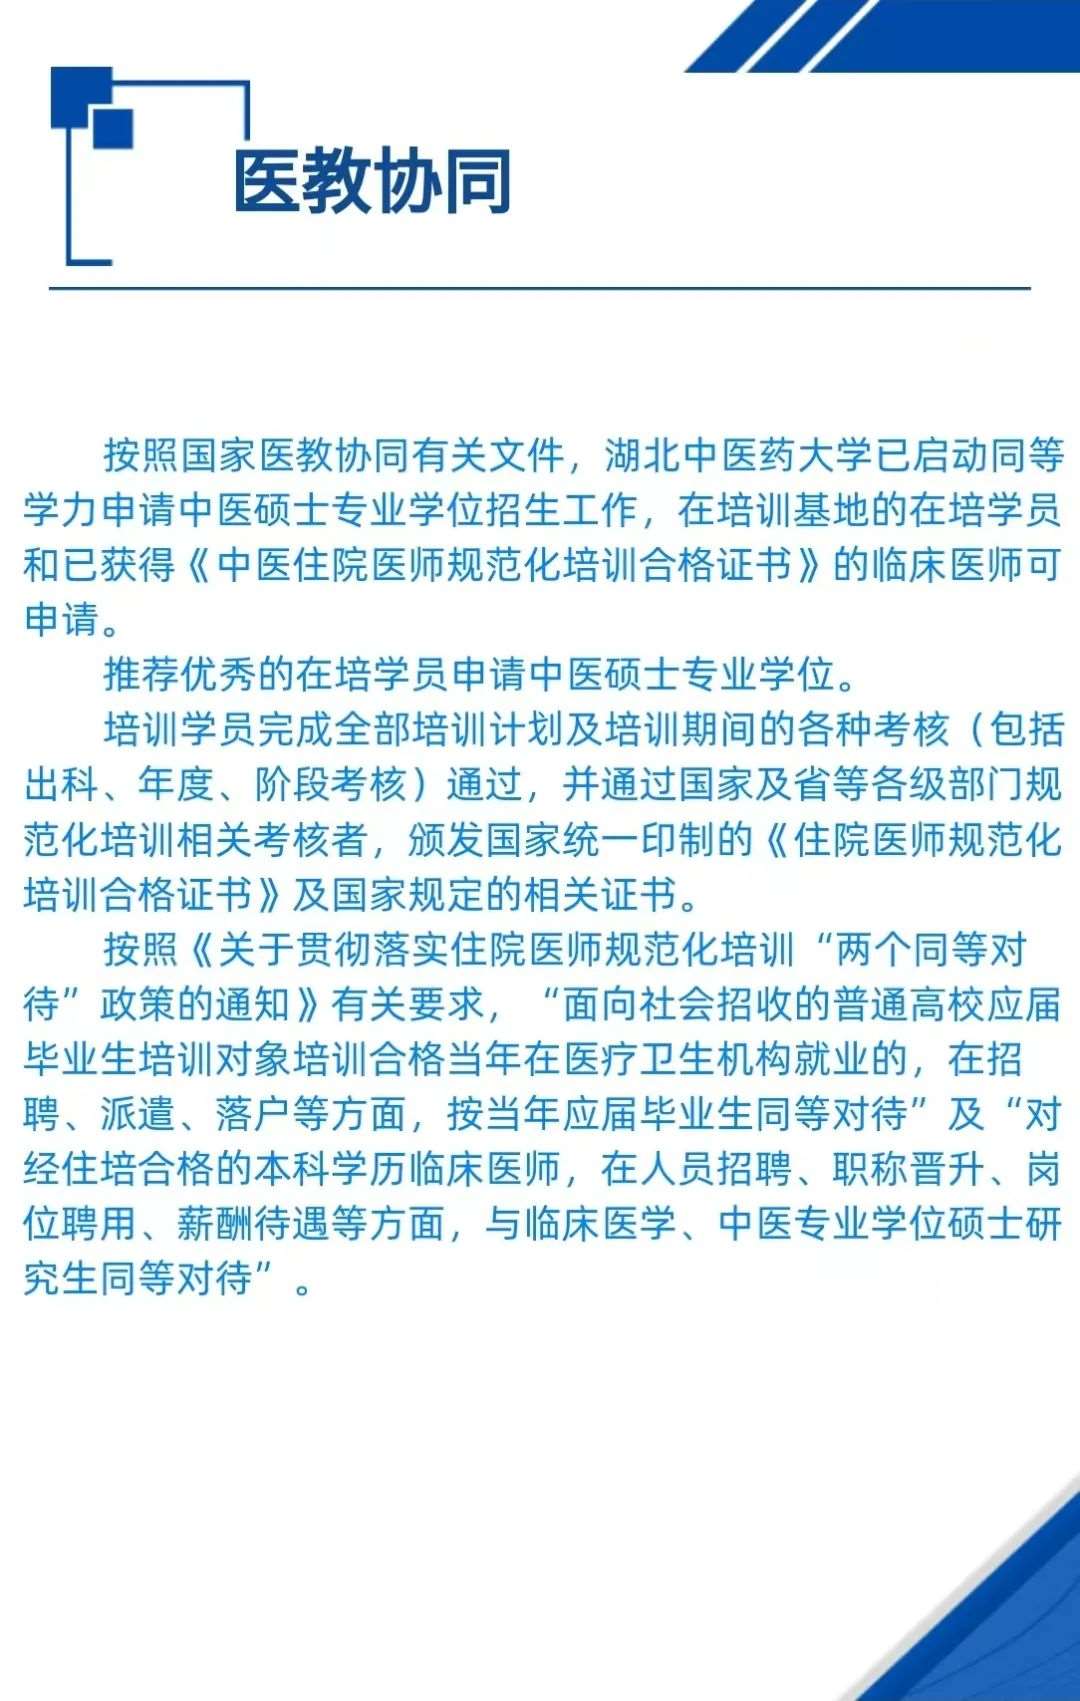 宜昌市中医医院2023年住院医师规范化培训招生简章第二批